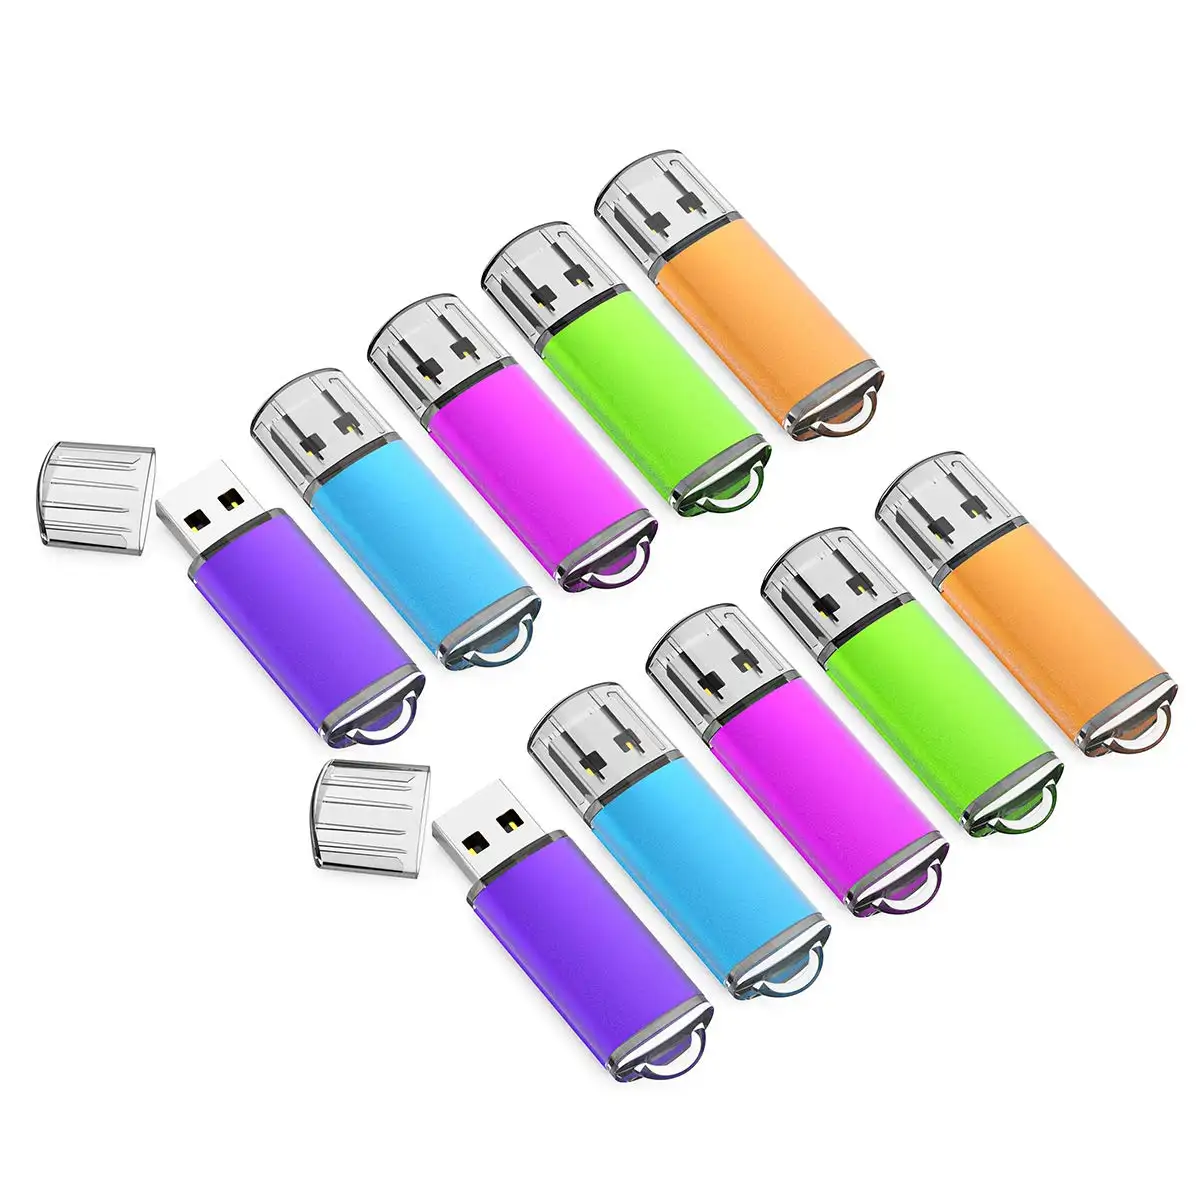 Mémoire de stockage Mémoire Disque USB 32 Go 64 Go Clé USB Design Pendrive Clé USB Clé USB avec indicateur LED